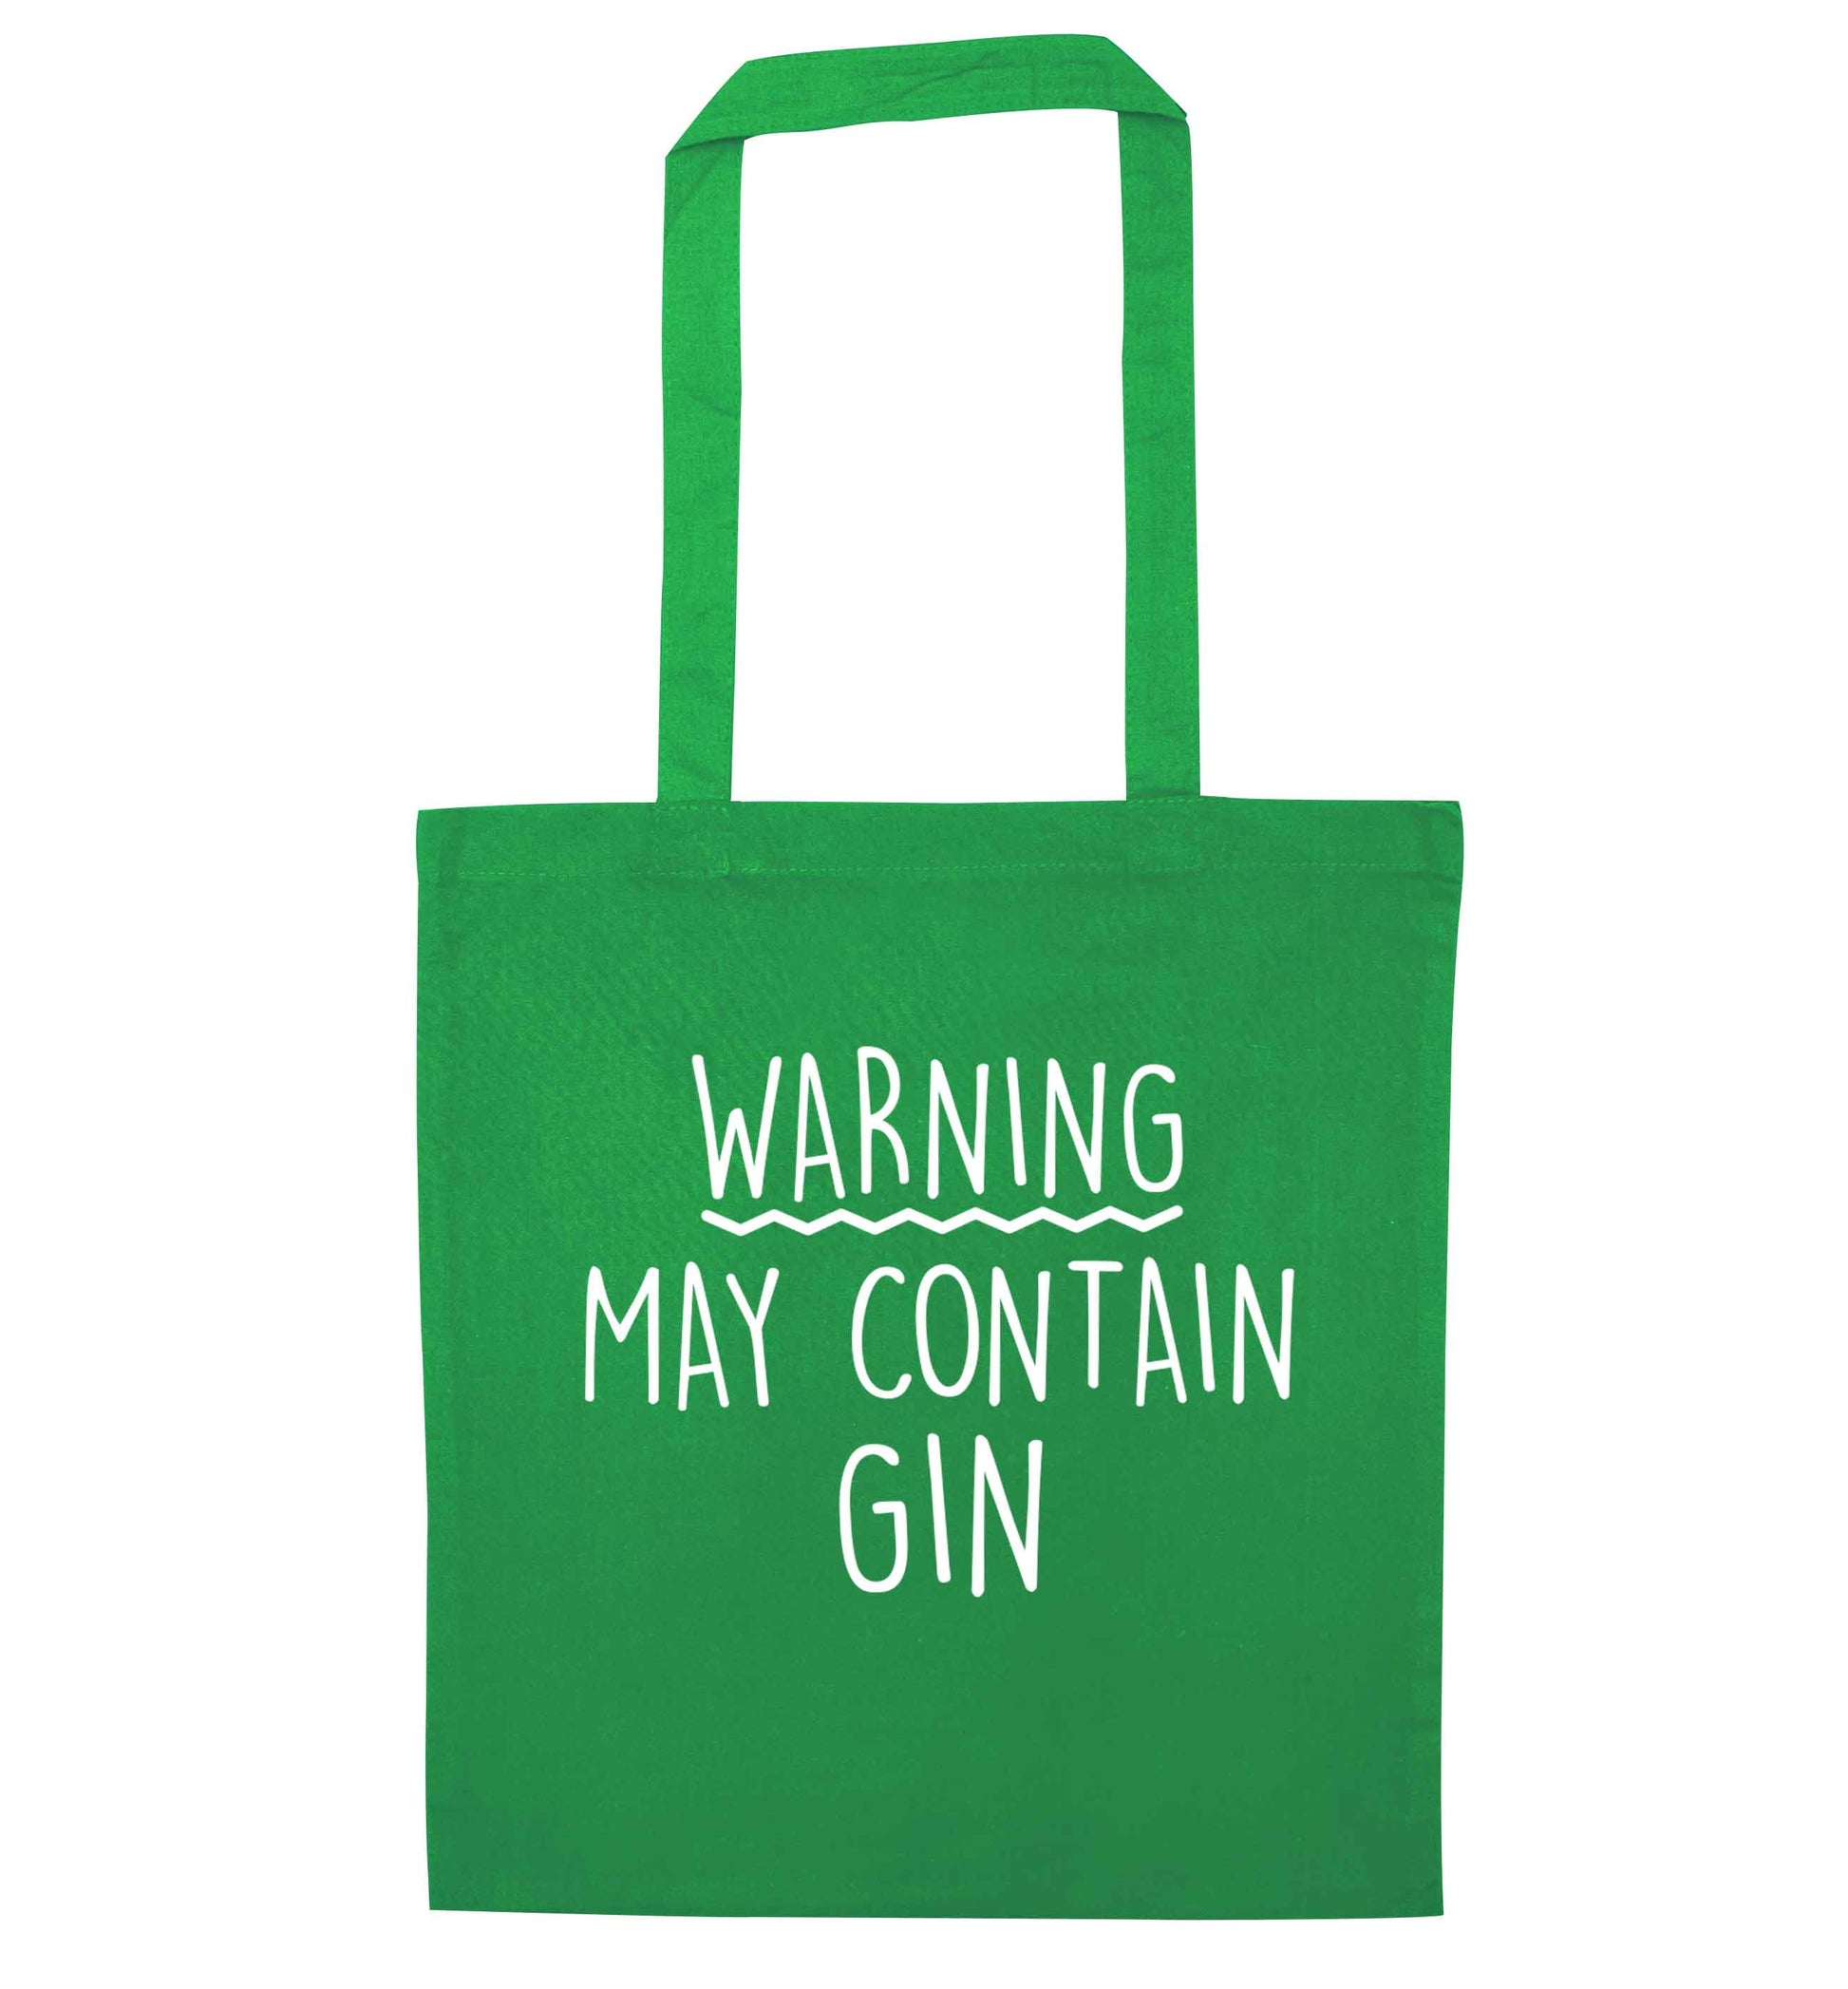 Warning may contain gin green tote bag